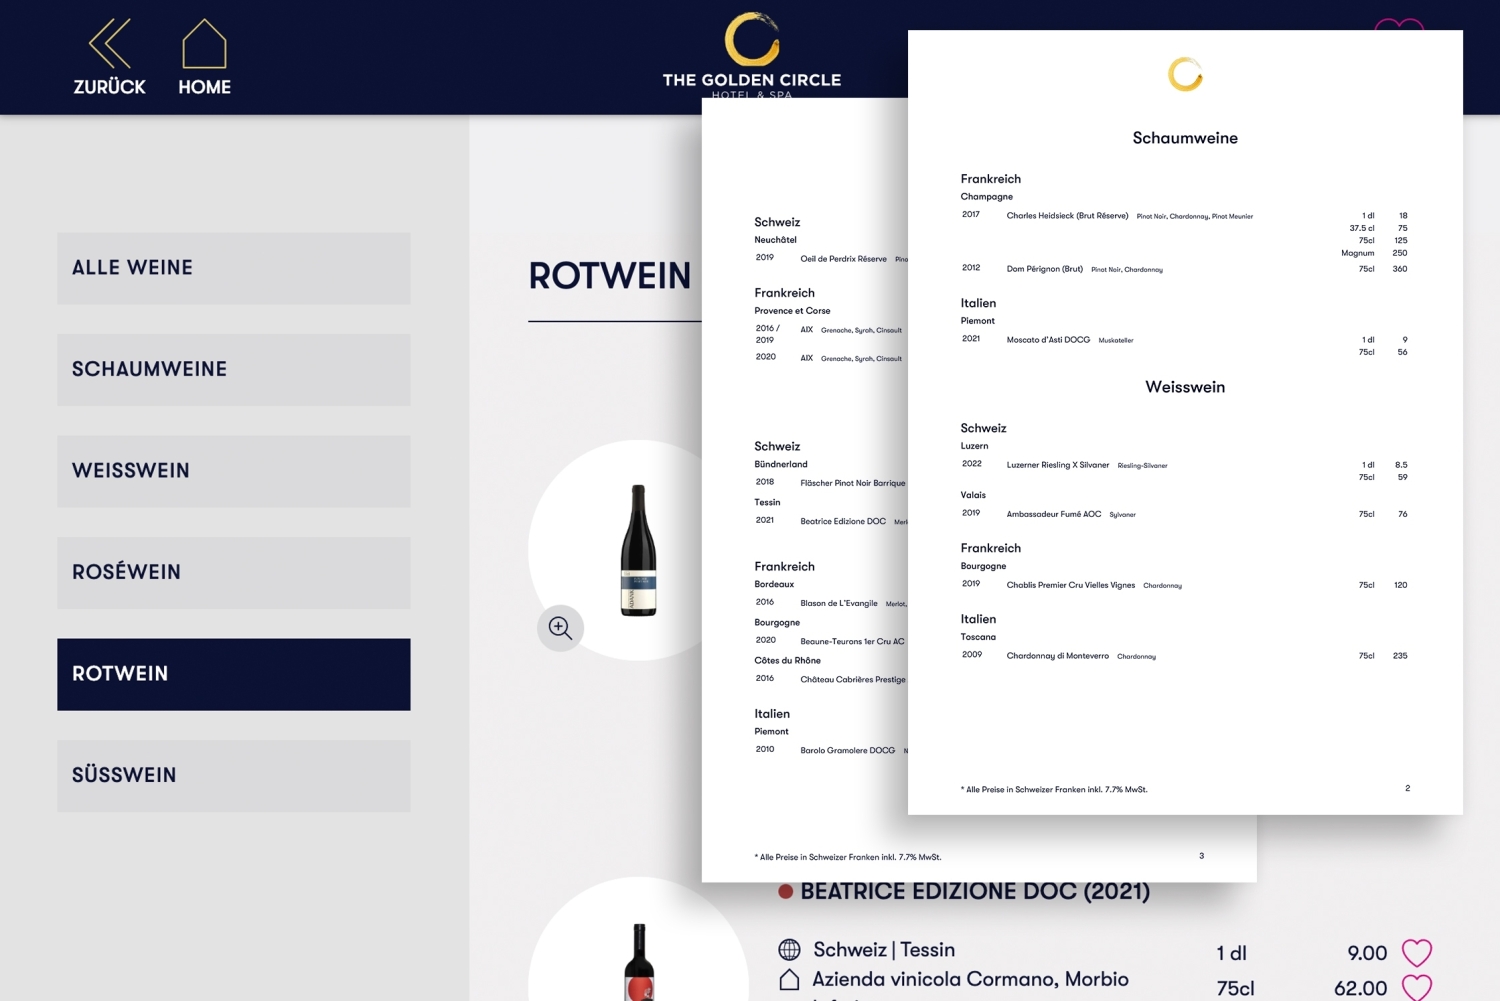 3 - Stampare carte dei vini personalizzate direttamente dall'app